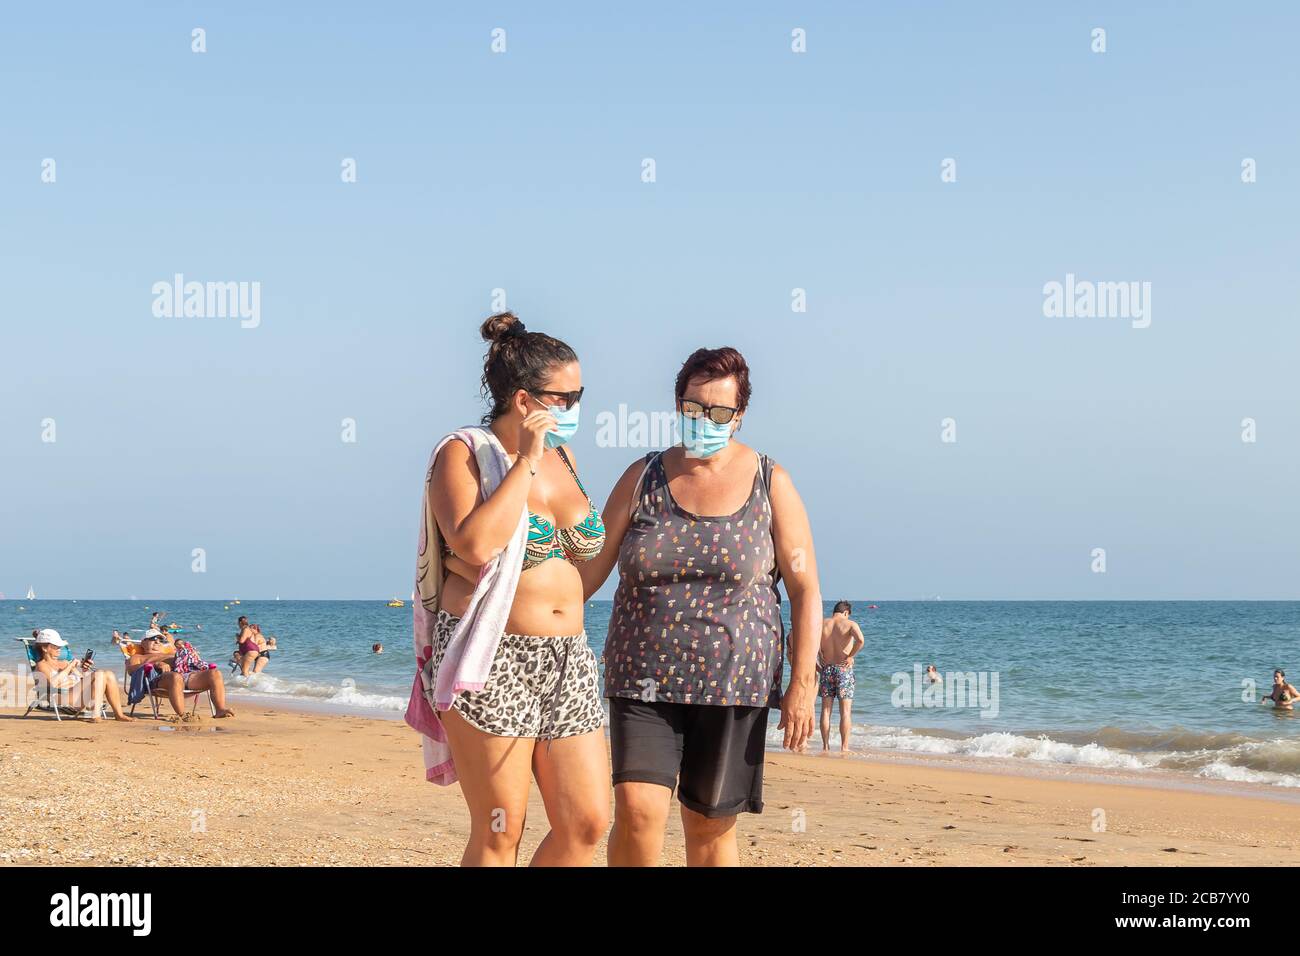 Punta Umbria, Huelva, Spanien - 7. August 2020: Zwei Frauen, die am Strand spazieren gehen und Schutzmasken oder medizinische Gesichtsmasken tragen. Neue Normalität in Spanien mit sozialen Stockfoto